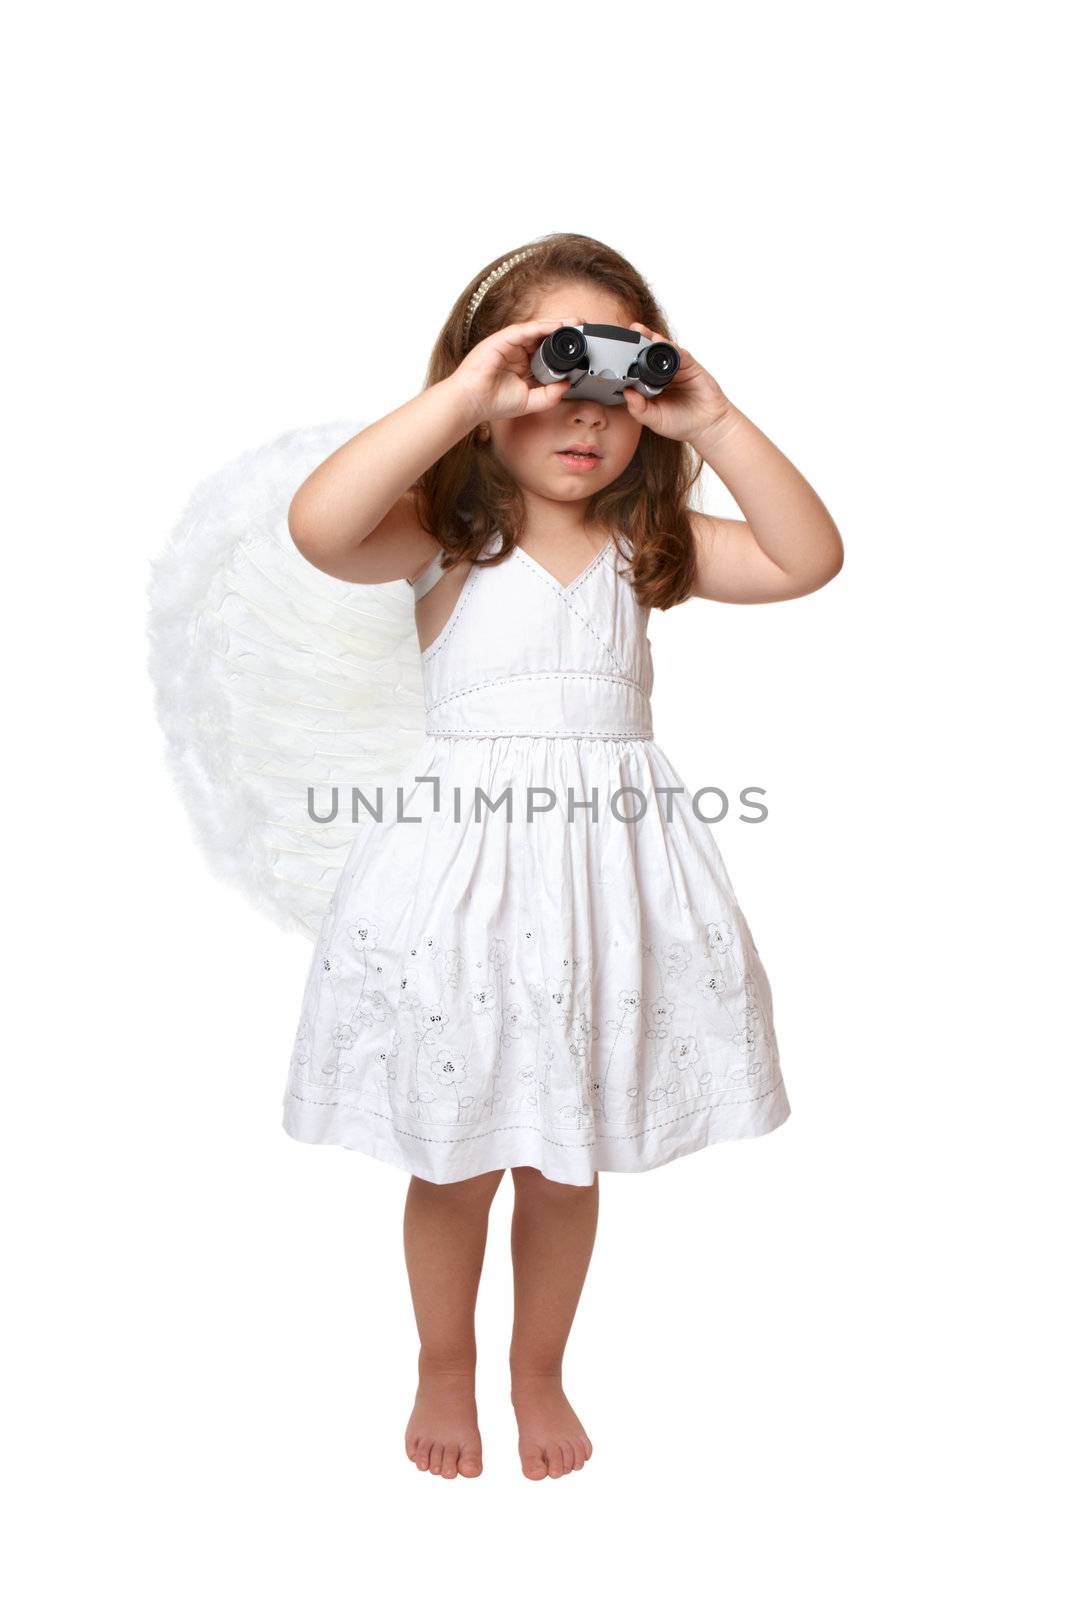 Heavenly angel looking watching through binoculars by lovleah